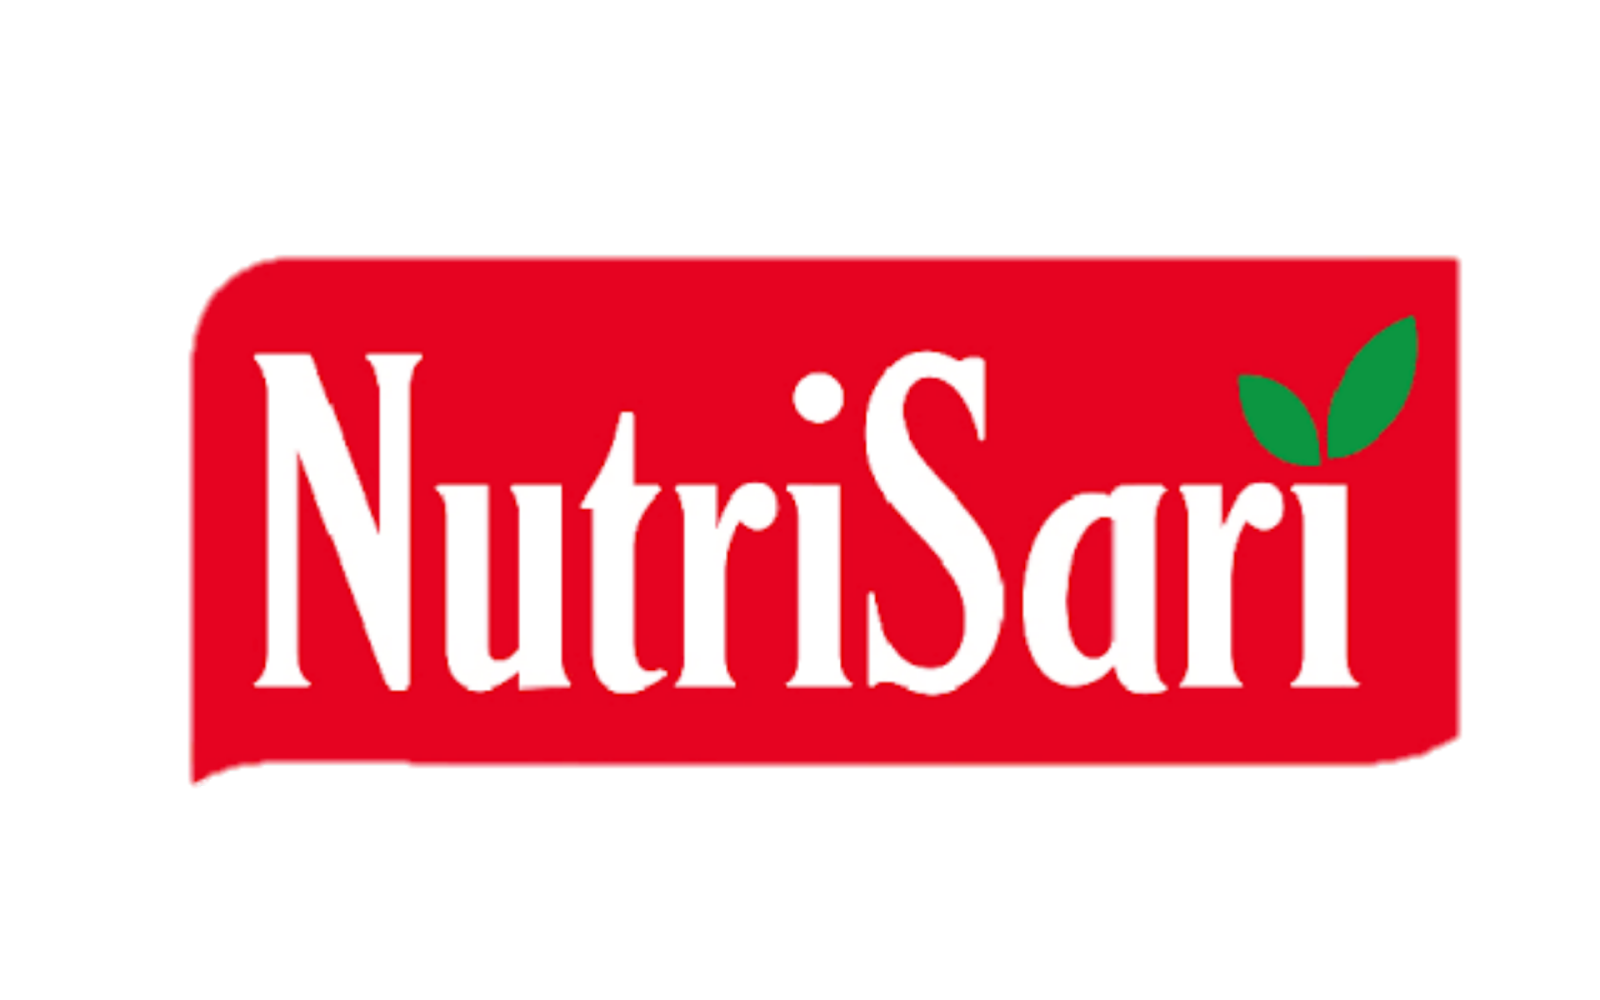 Logo Nutrisari Format PNG